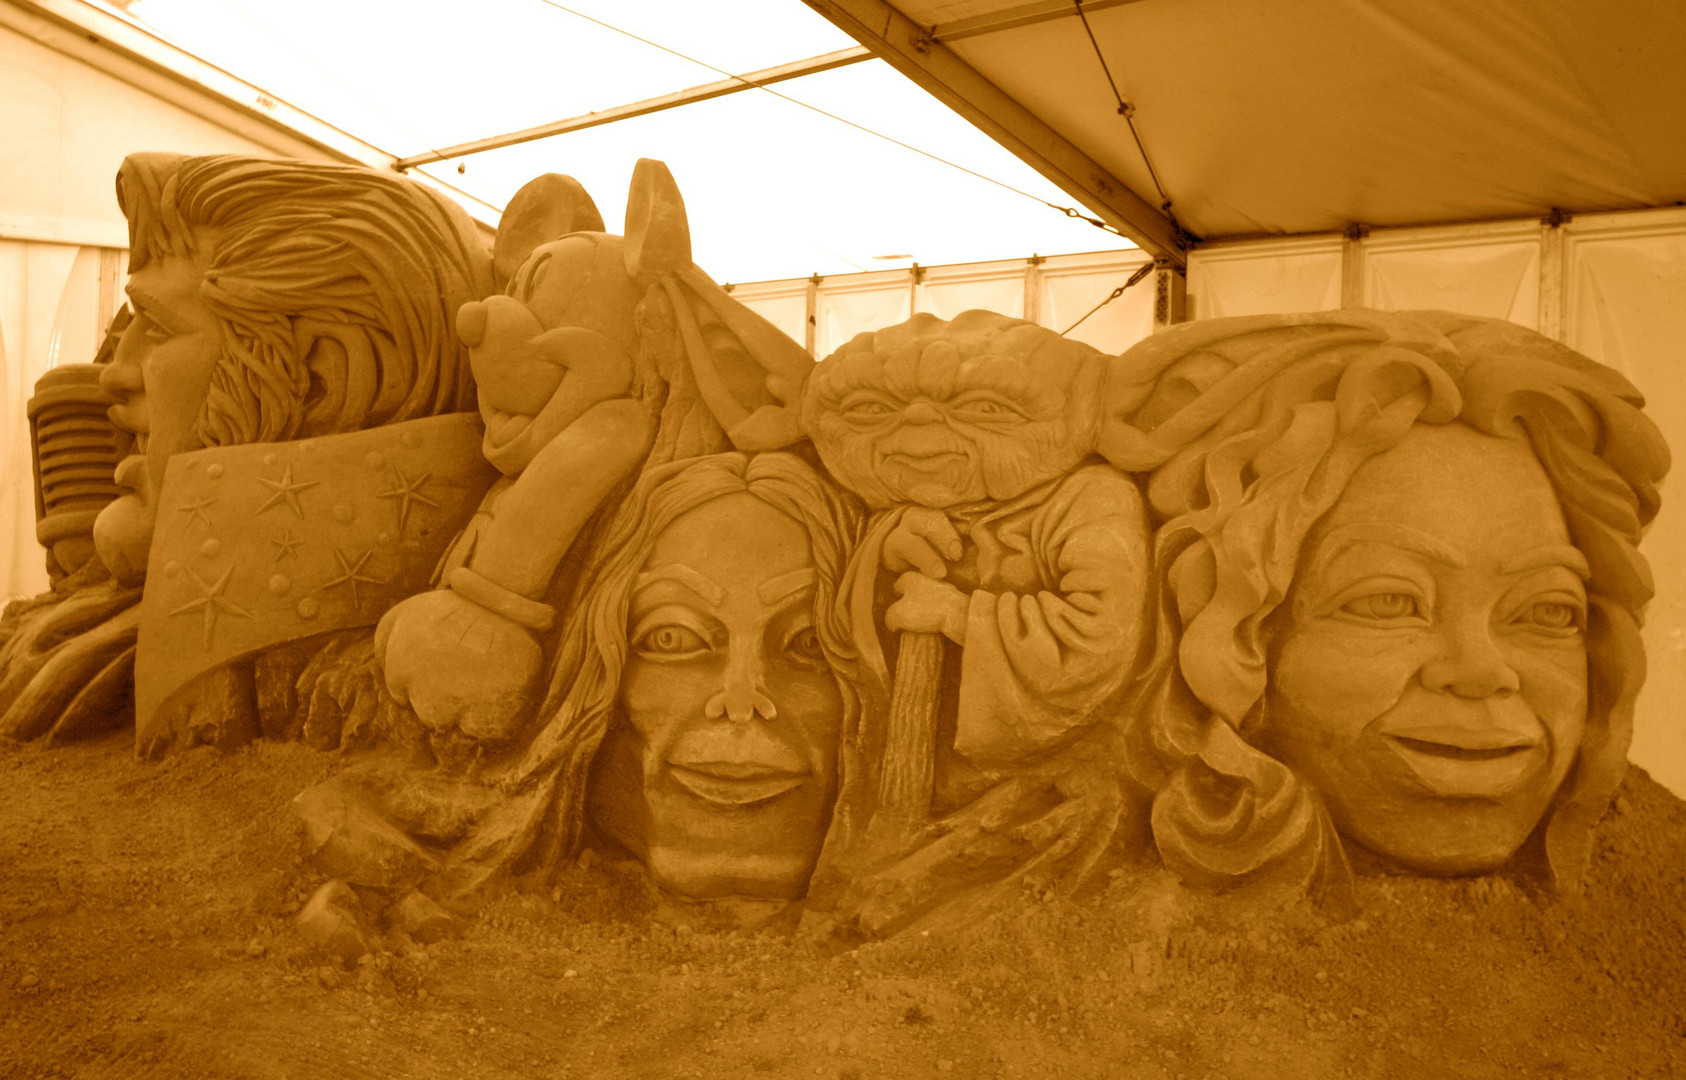 Sandskulpturen-Event in Neddesitz(Rügen)